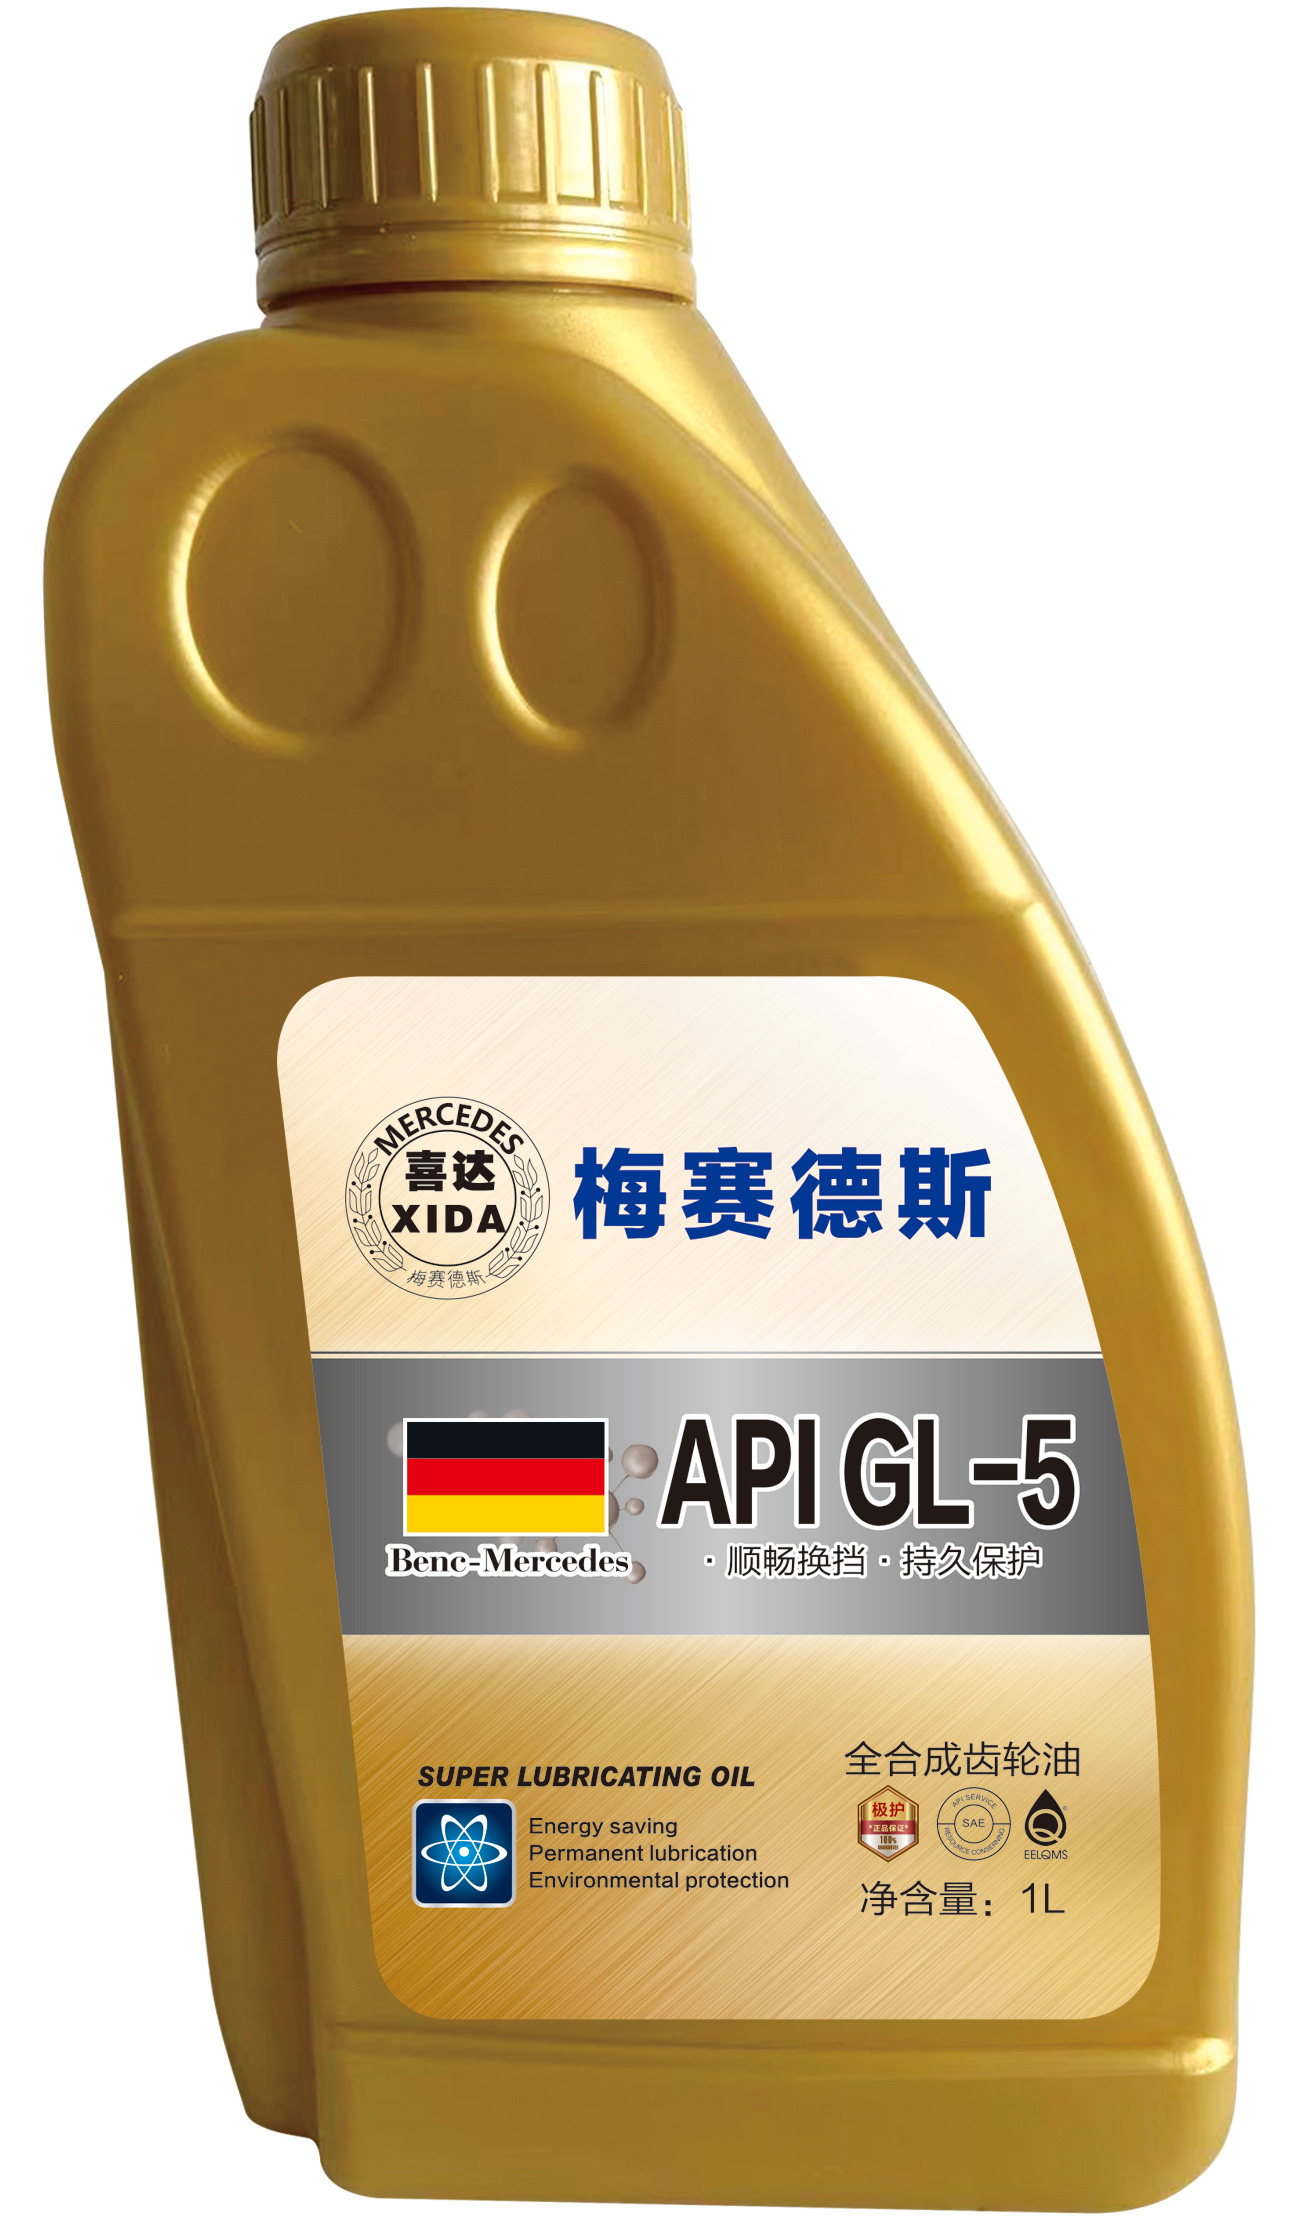 API-GL-5